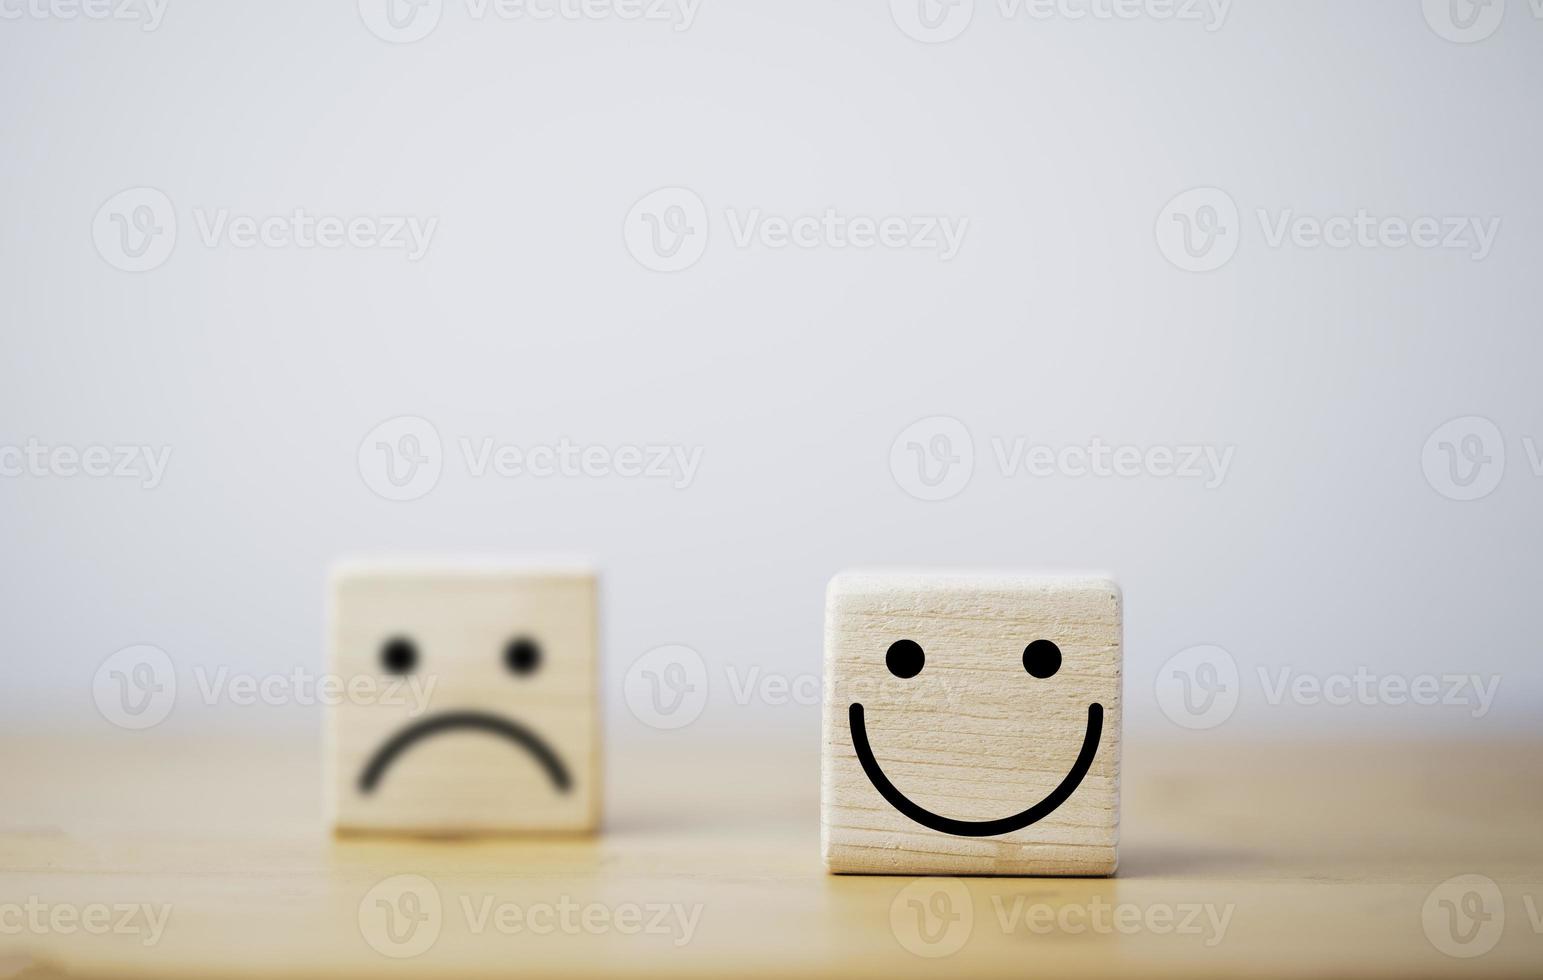 focus van glimlachgezicht en defocus van droevig gezicht op houten blokkubus voor positief mindset-selectieconcept. foto